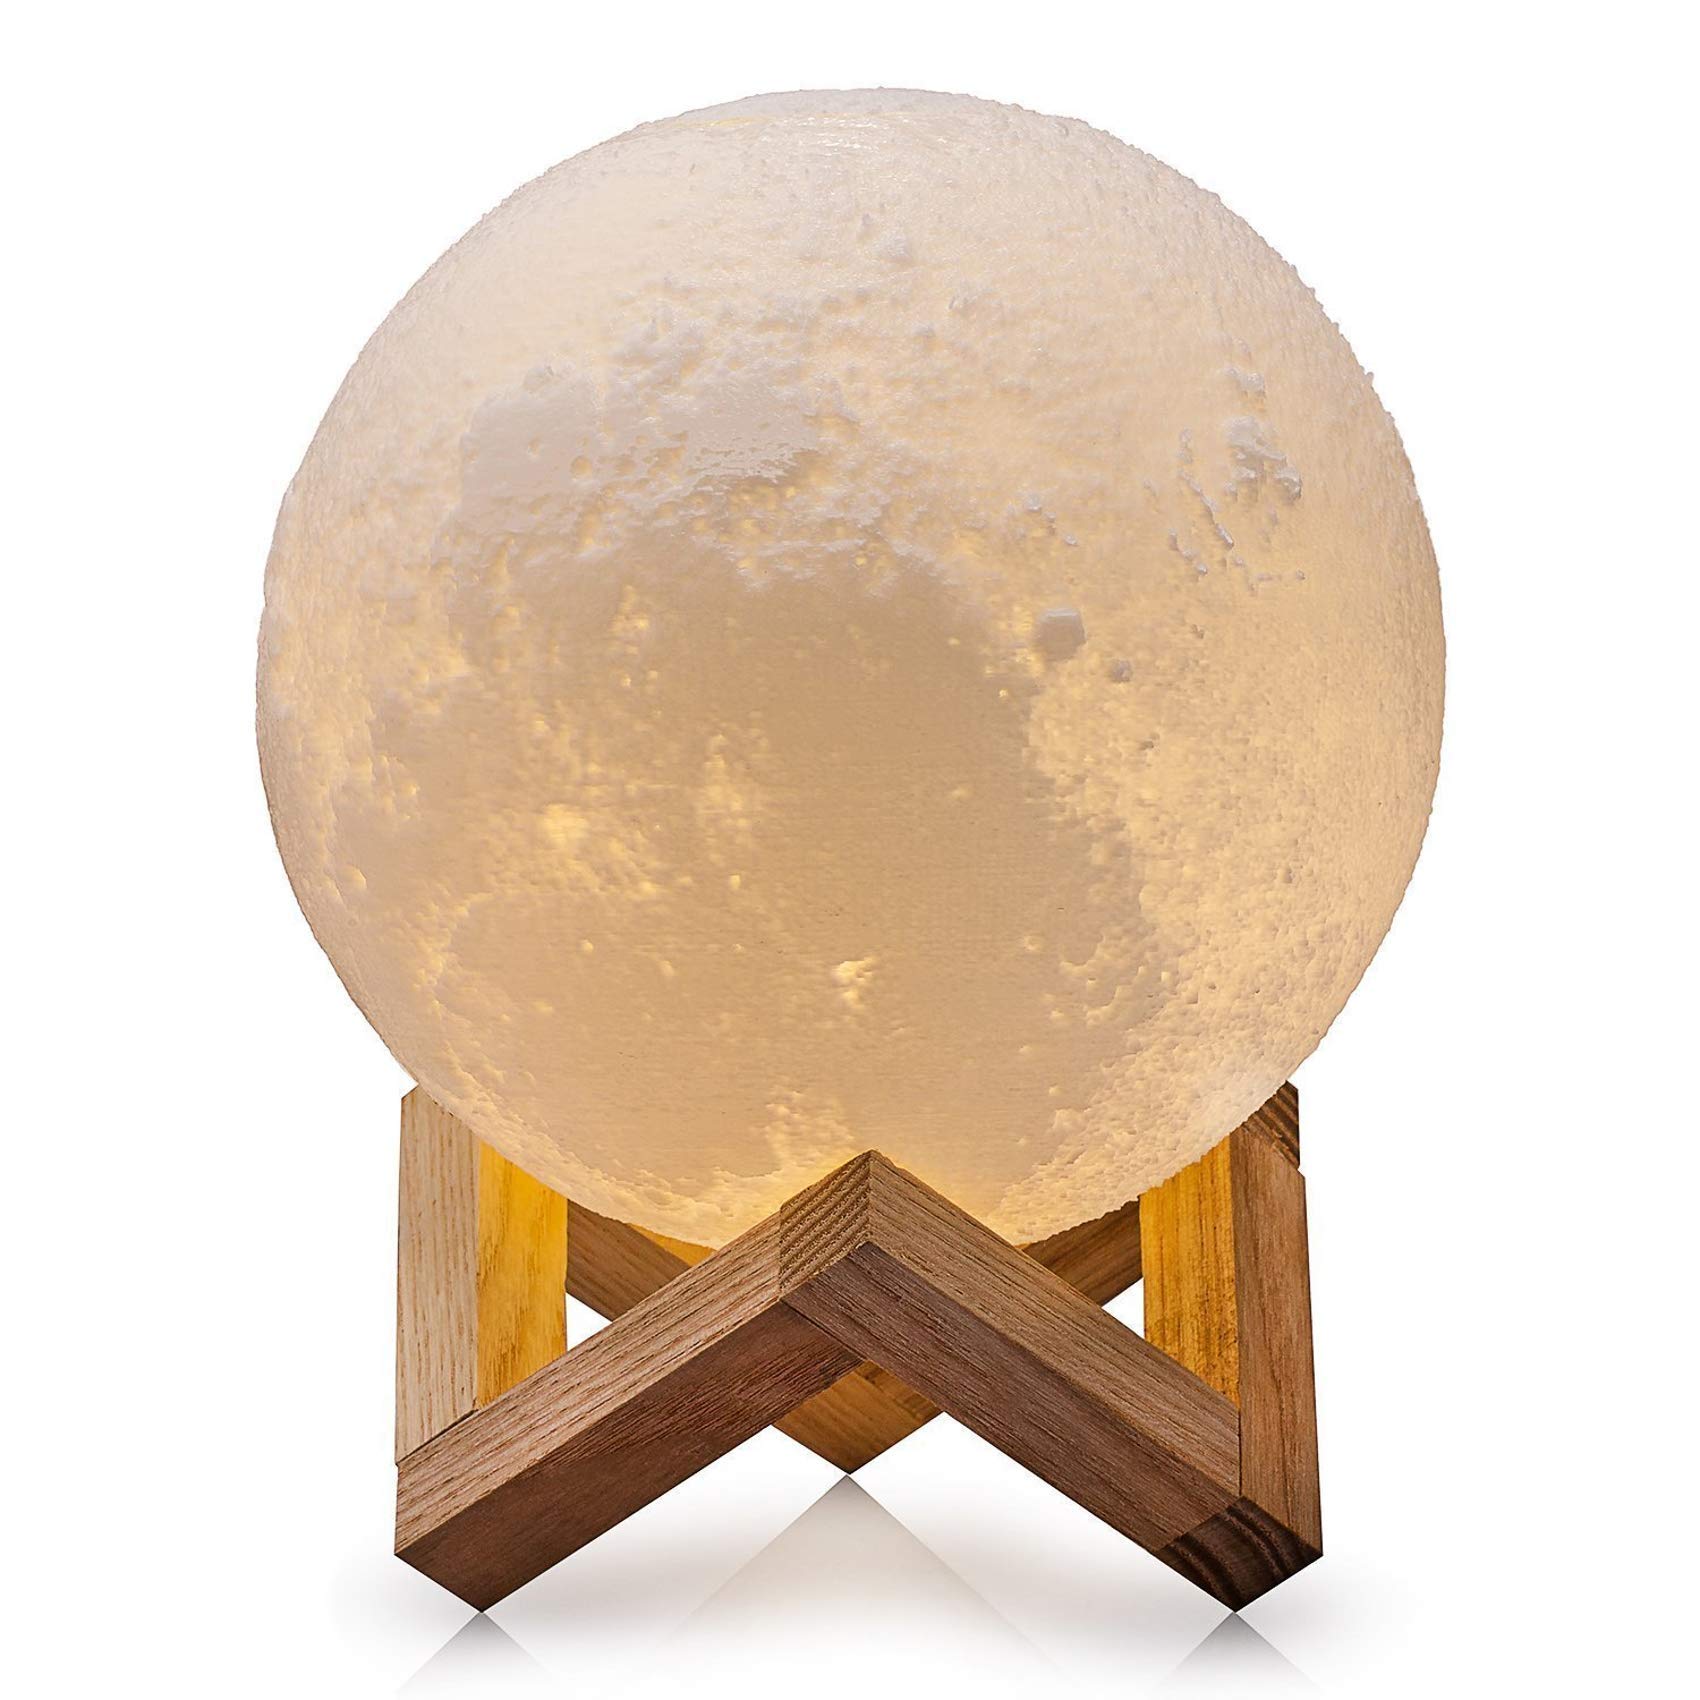 Lampa de birou in forma de luna – Moonlight